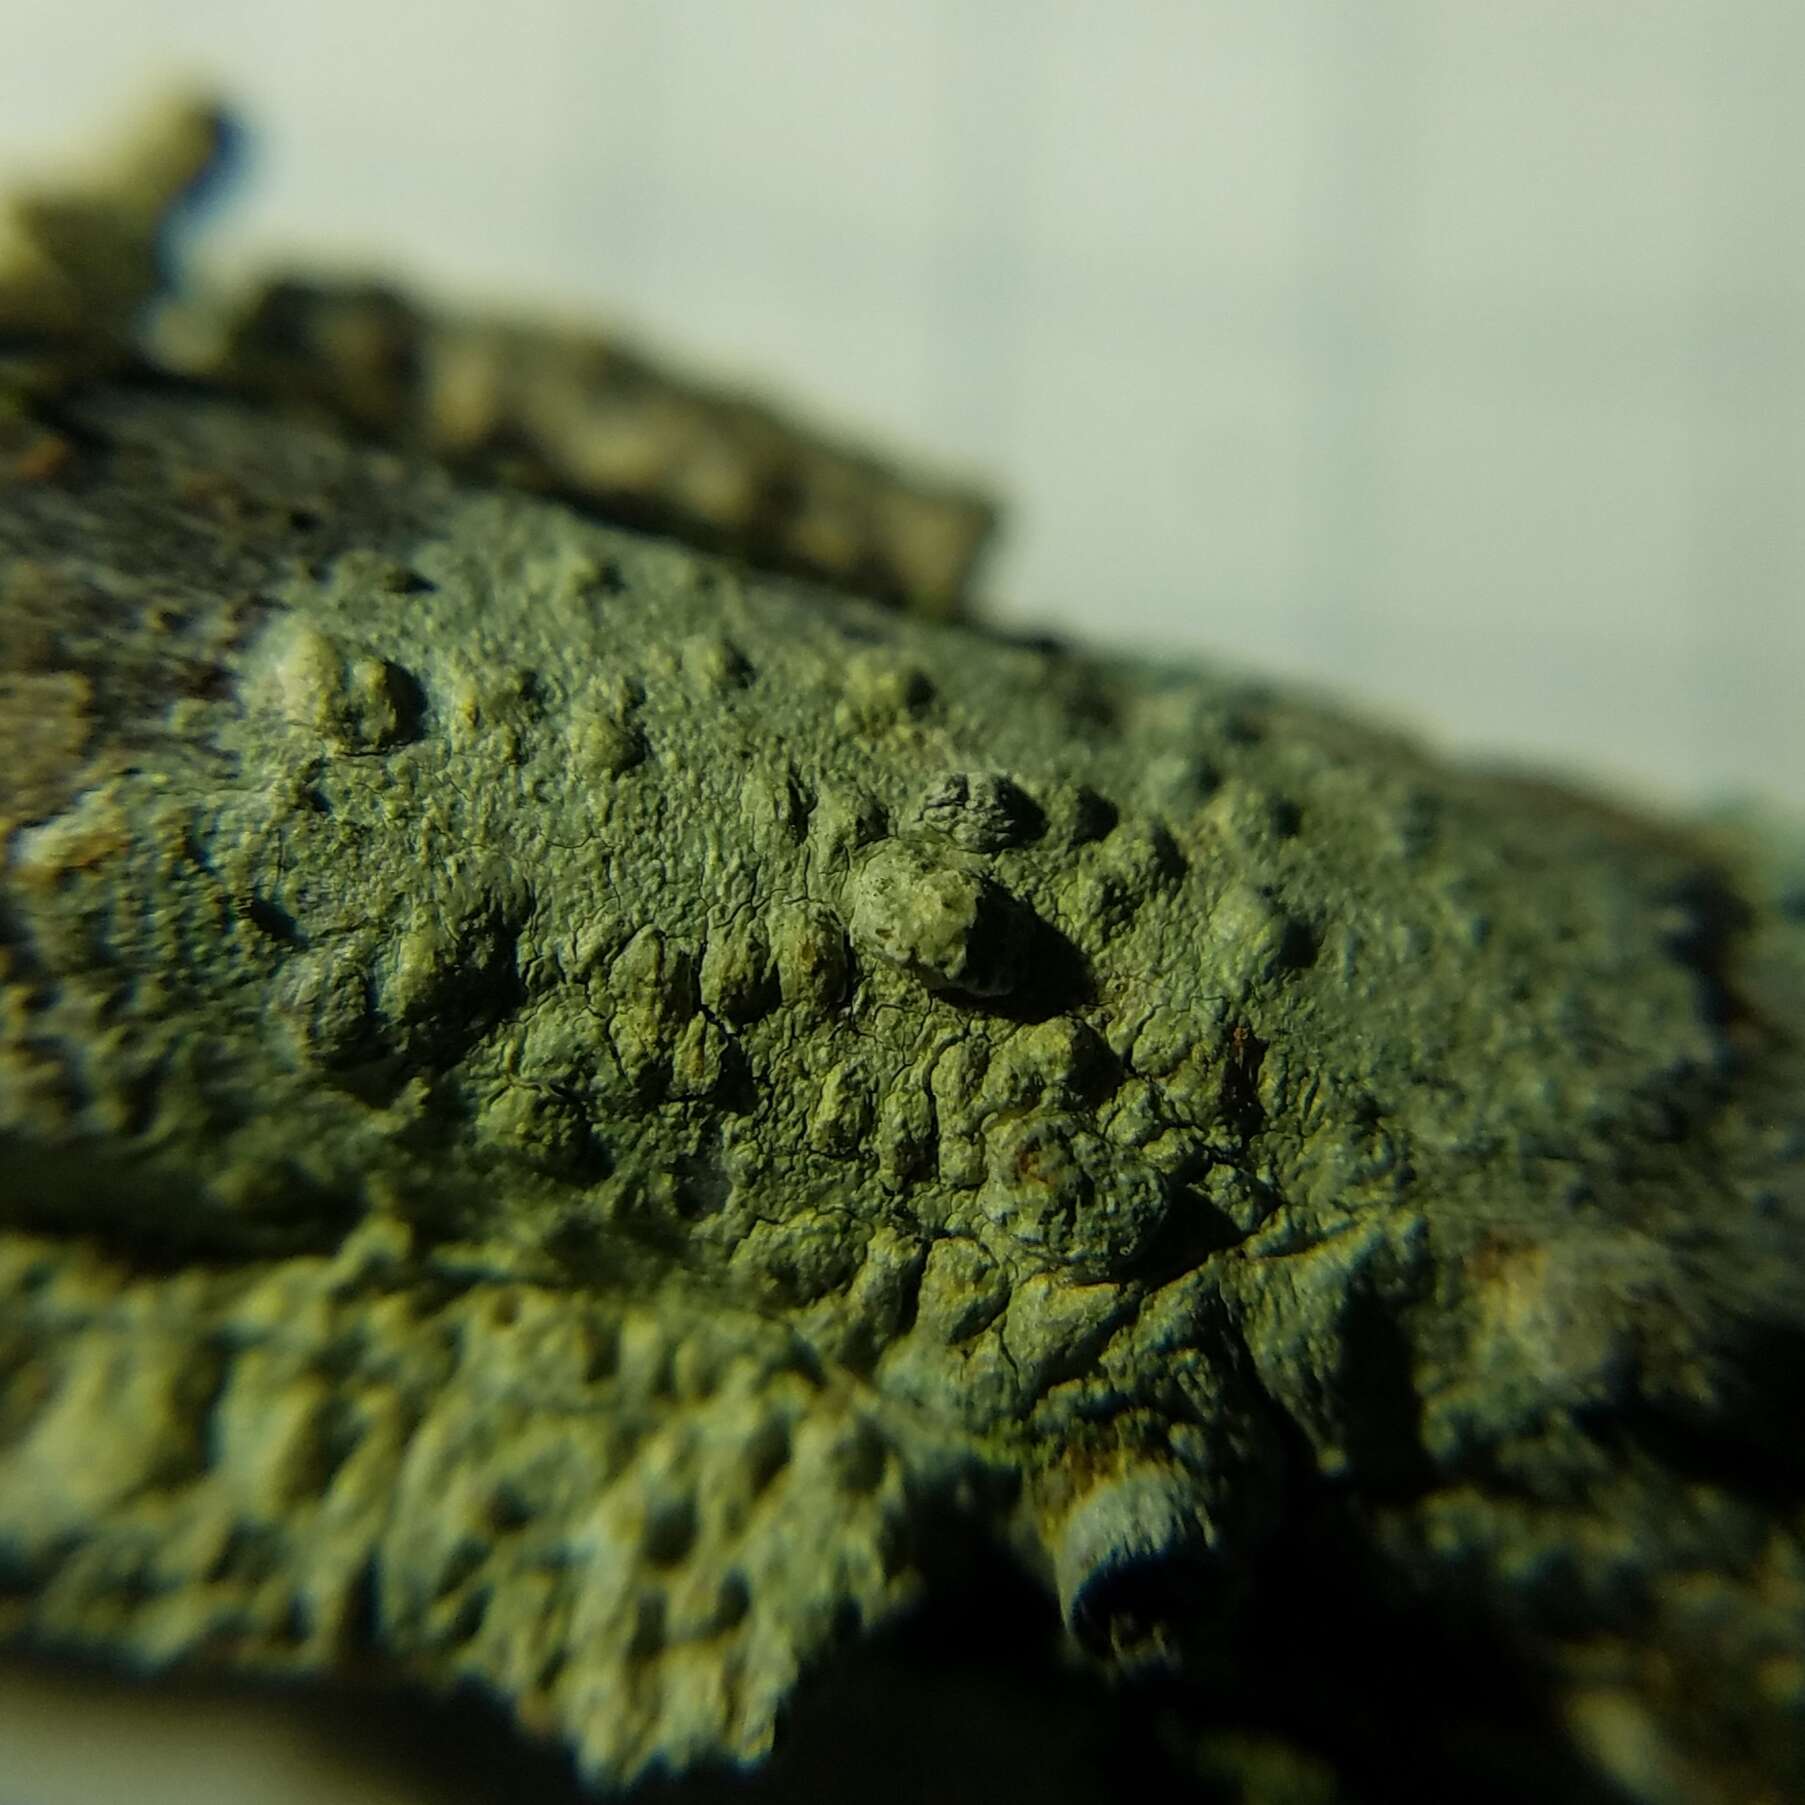 Image of Texan pore lichen